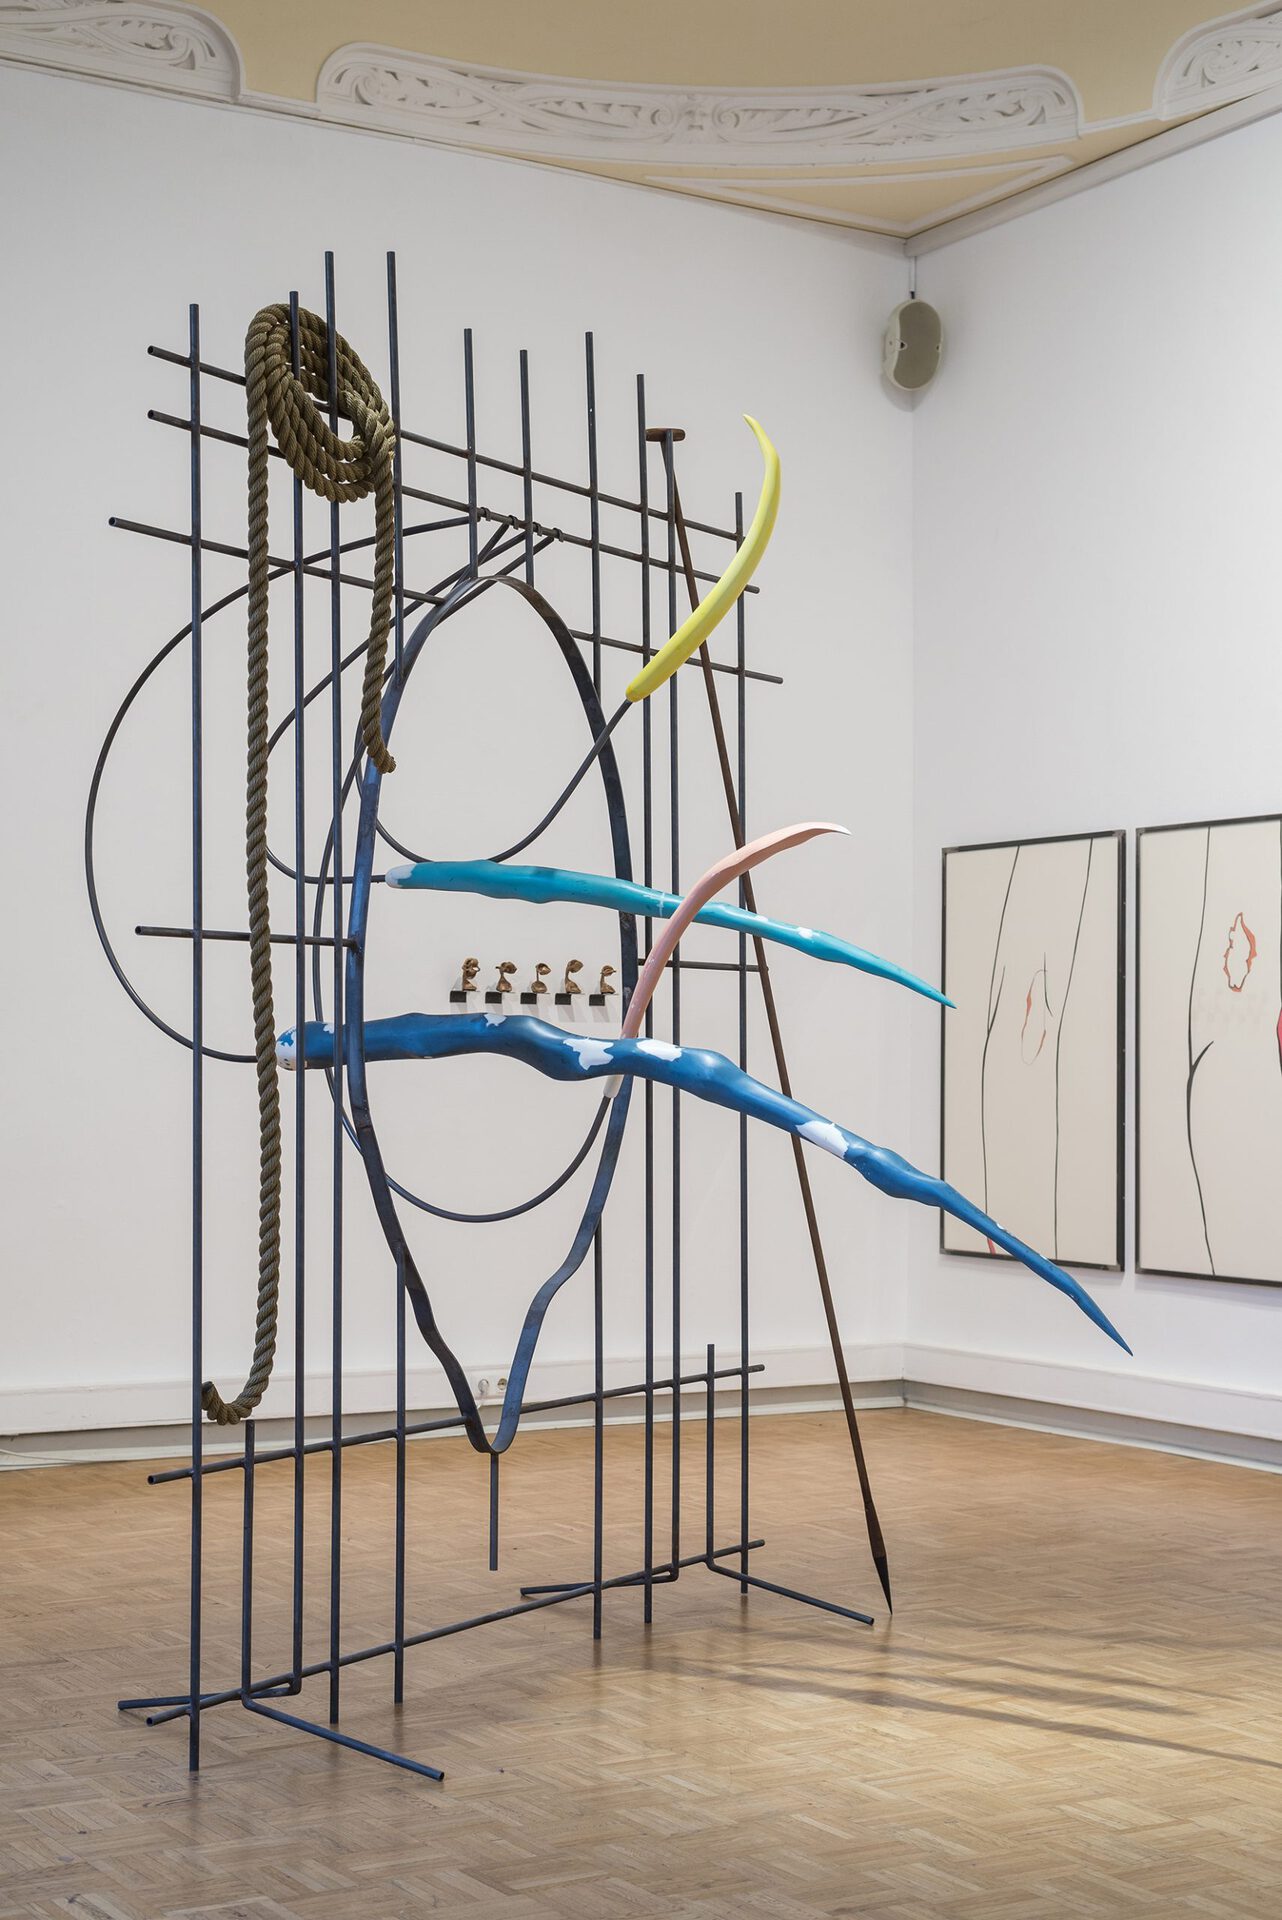 Stefan Seelge,Stalker,2019,Metall, verstärkter Kunststoff, Pigmente, Seil, Holz,275 x 230 x 240 cm